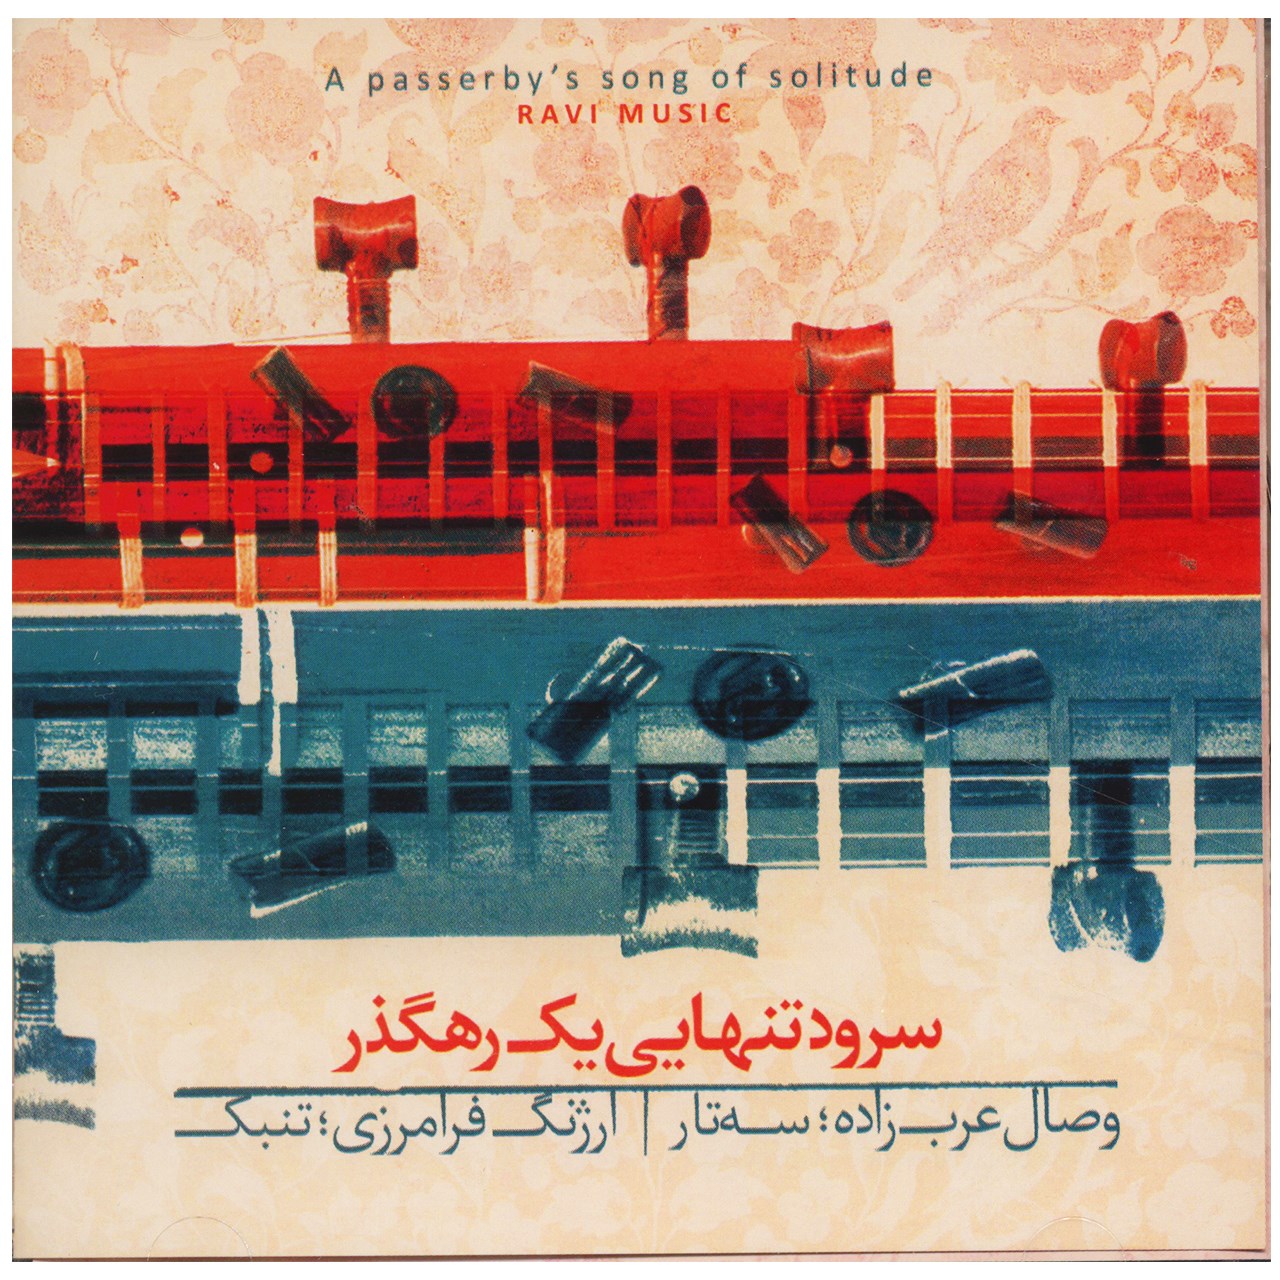 آلبوم موسیقی سرود تنهایی یک رهگذر اثر وصال عرب زاده